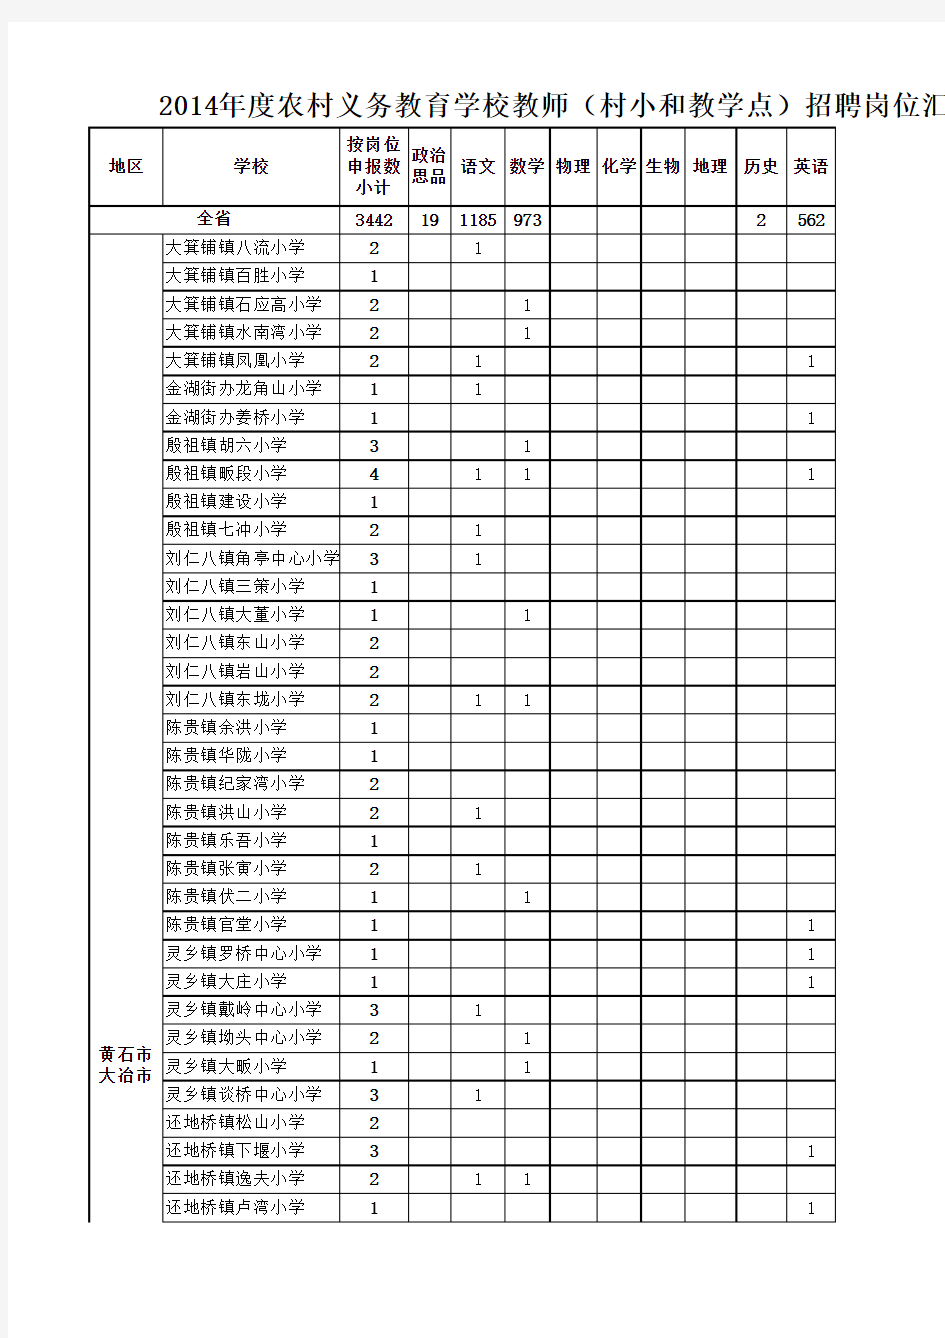 2014年全省湖北农村教师招聘岗位一览表(01.06)